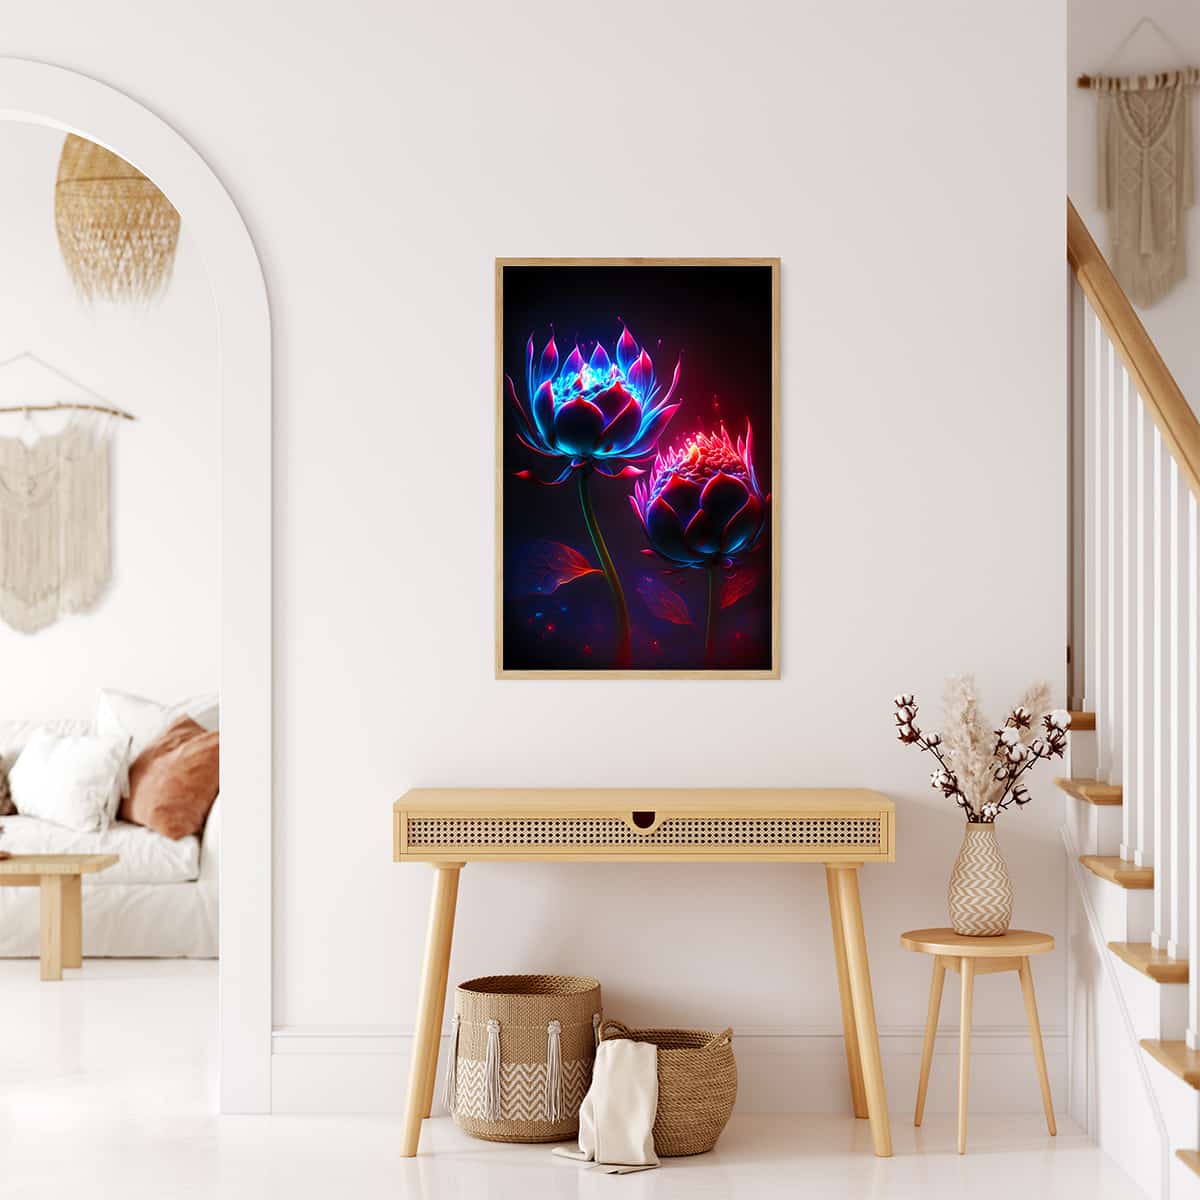 Diamond Painting - Blumenköpfe bei Nacht - gedruckt in Ultra-HD - Blumen, Neu eingetroffen, Vertikal